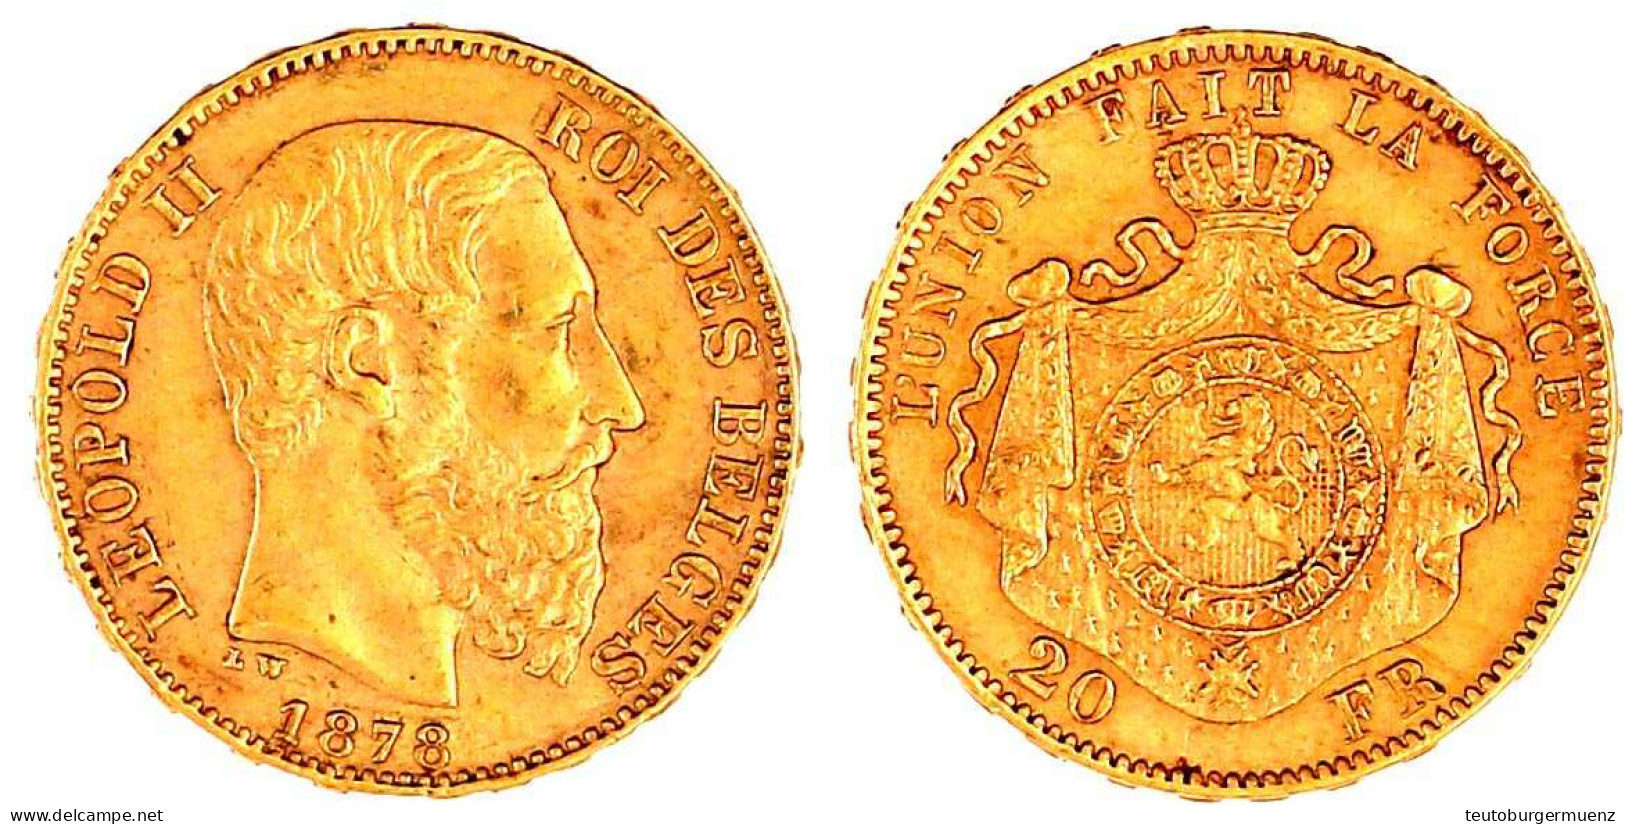 20 Francs 1878. 6,45 G. 900/1000. Vorzüglich. Krause/Mishler 37. - 20 Francs (gold)